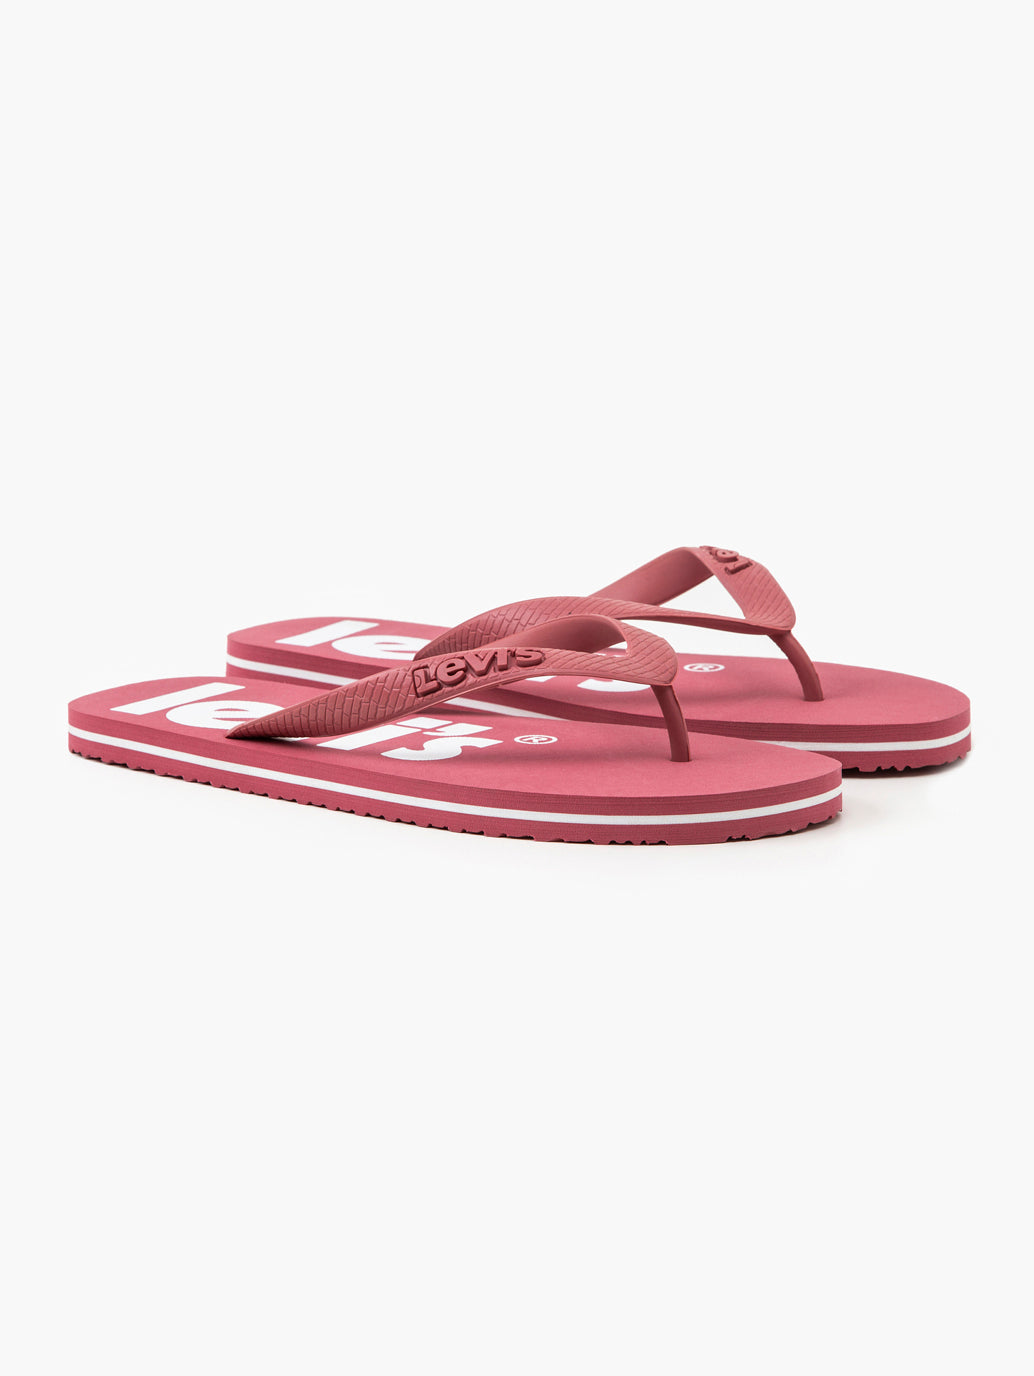 Unisex Dark Pink Debossed & Printed Logo Flip-Flops